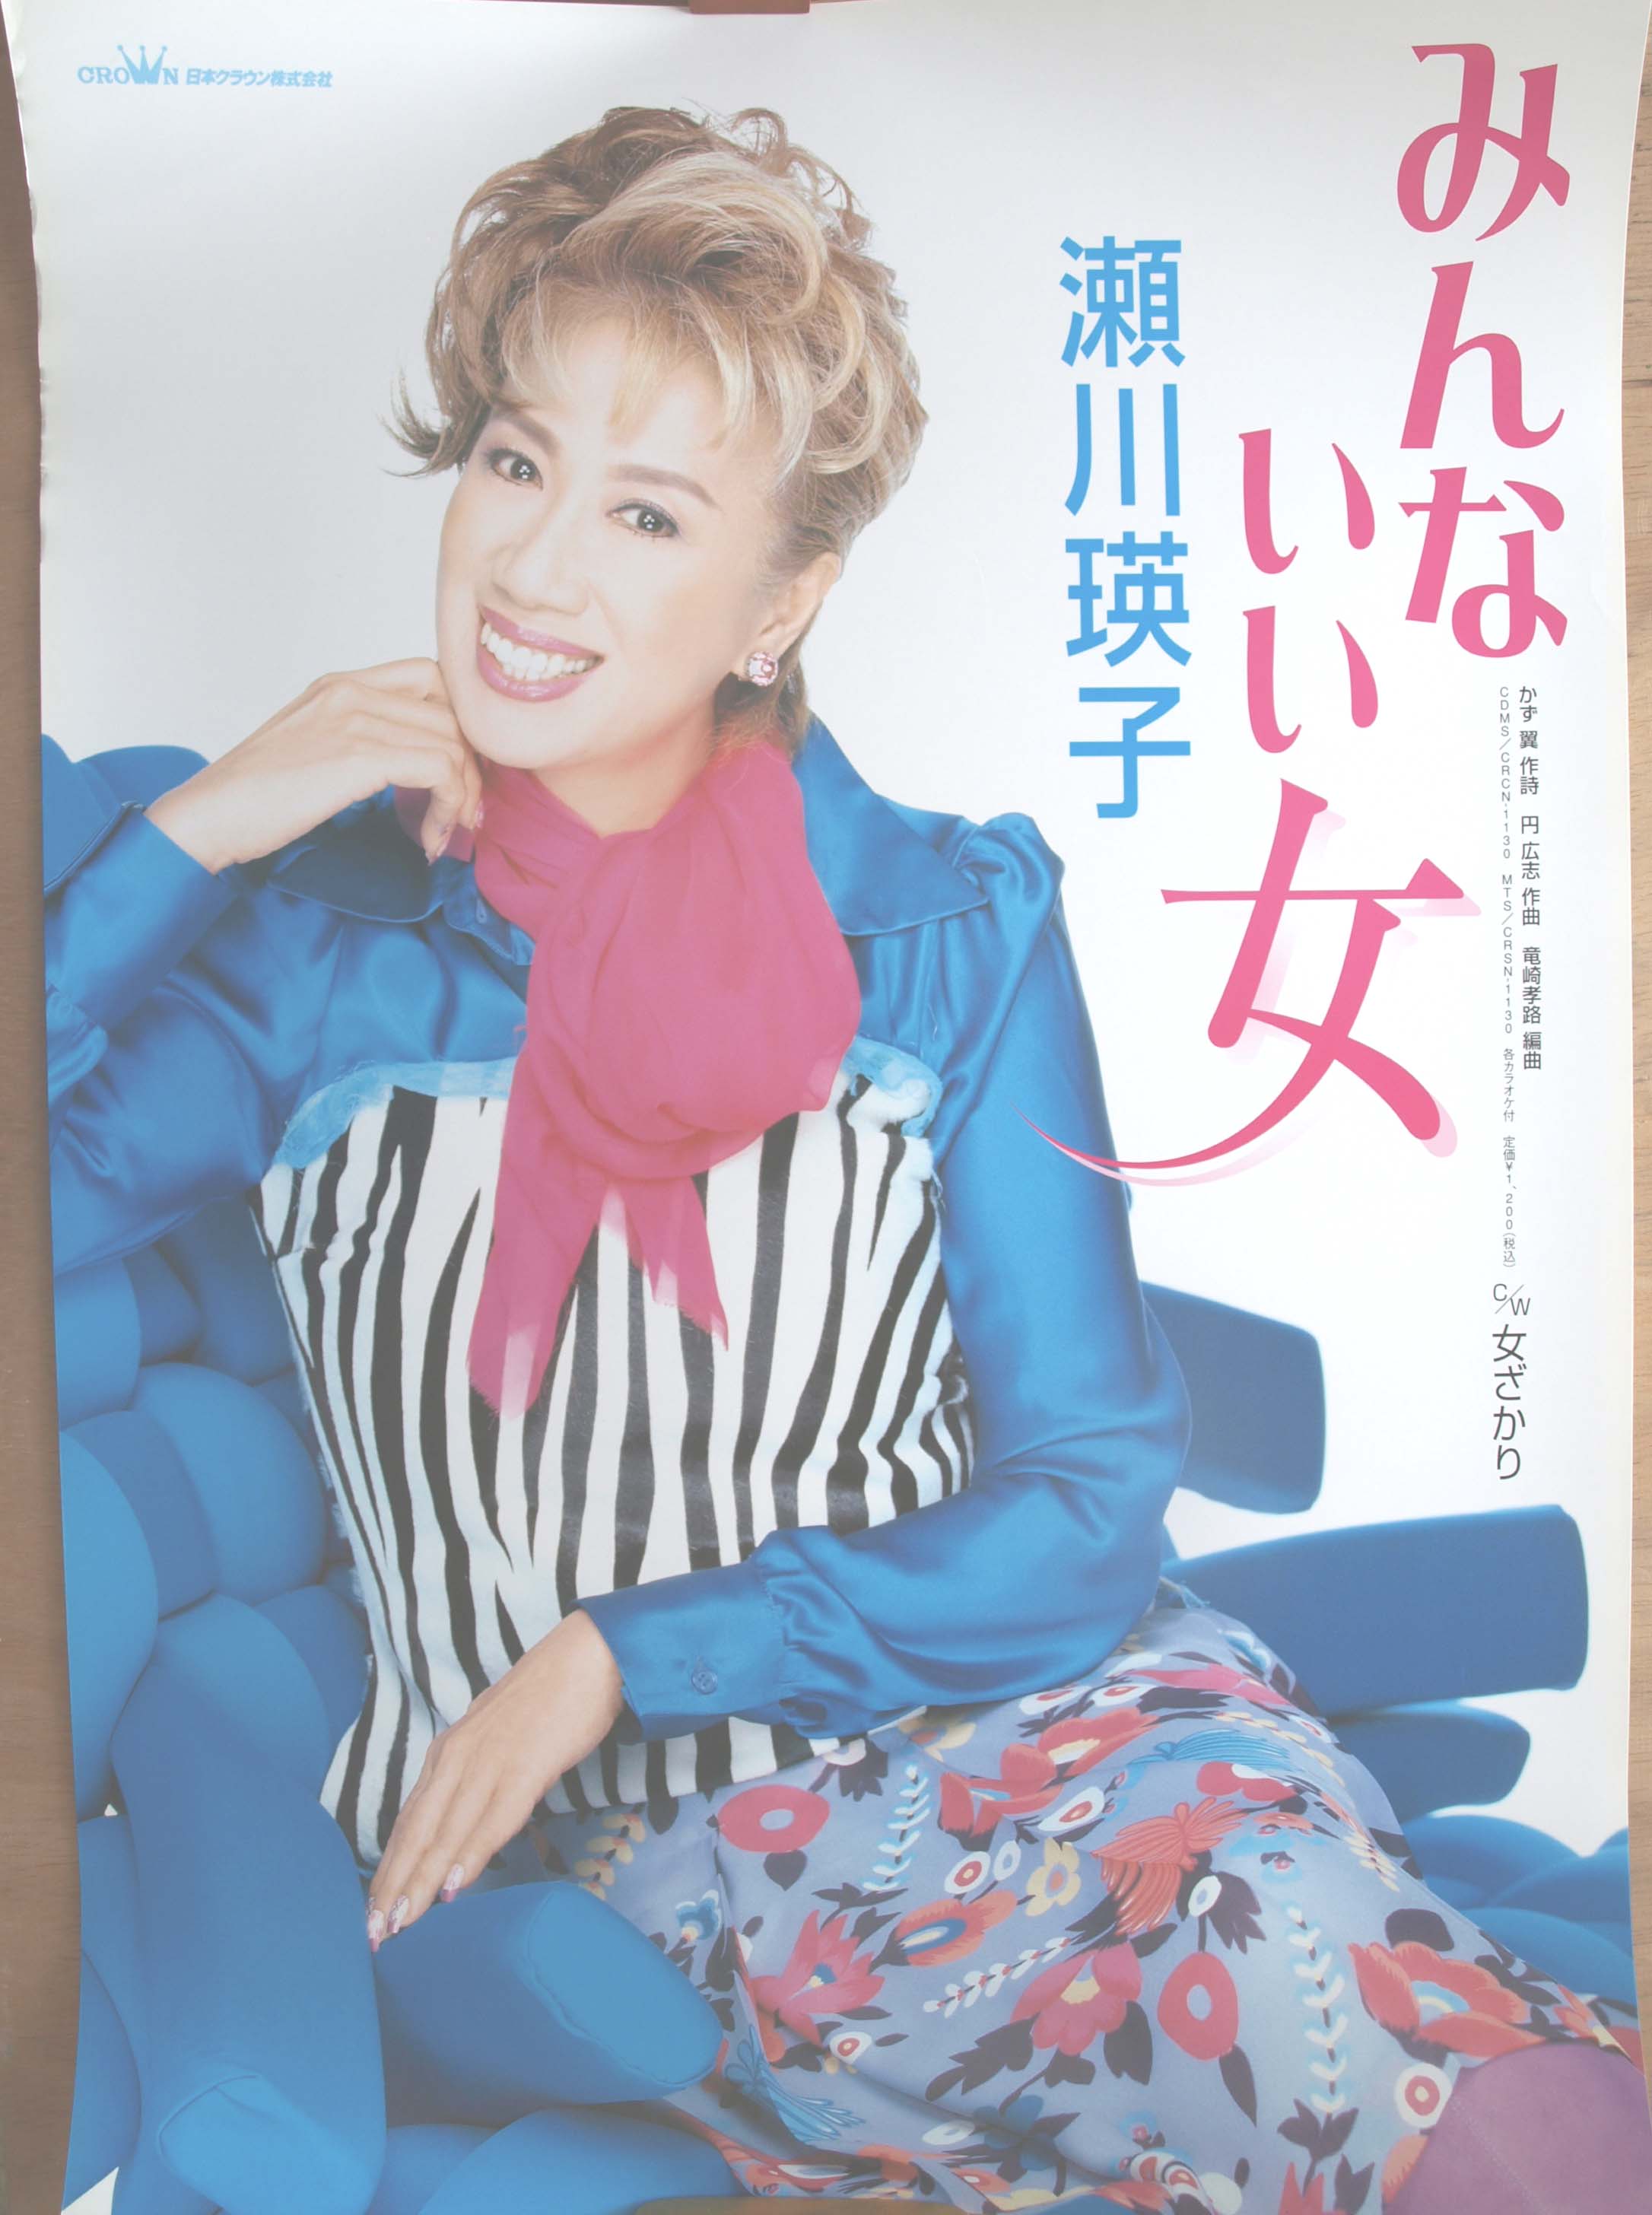 瀬川瑛子 「みんないい女」のポスター